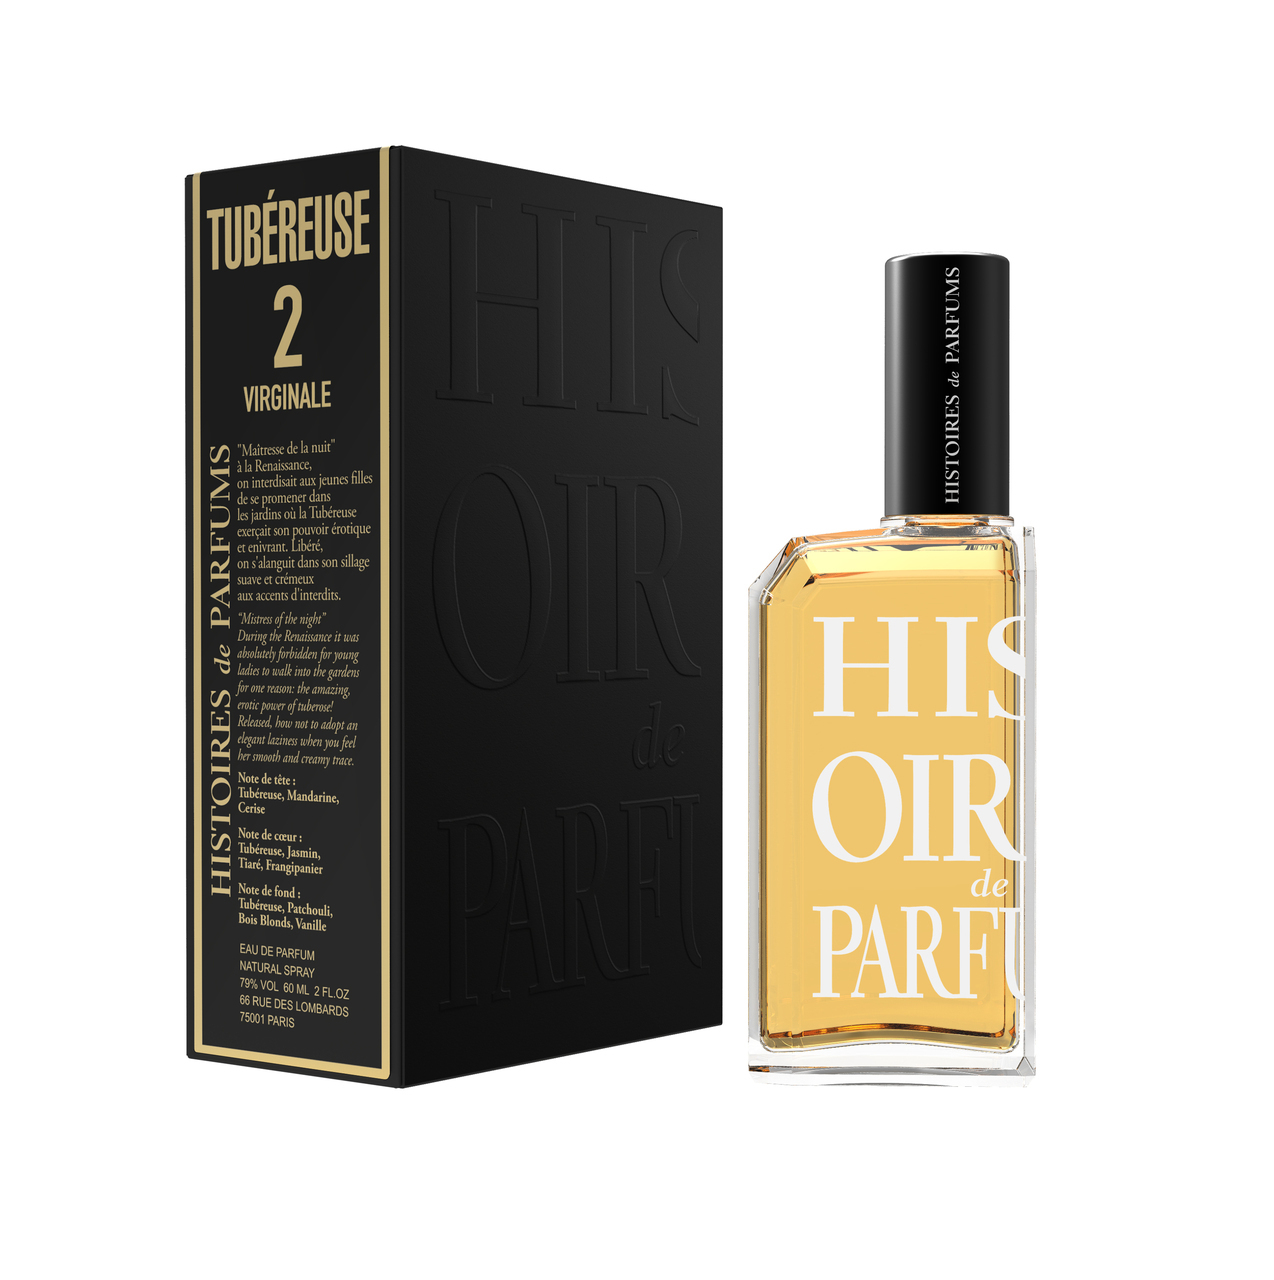 Histoires de Parfums Tuberuese 2 Virginale EDP 60ml